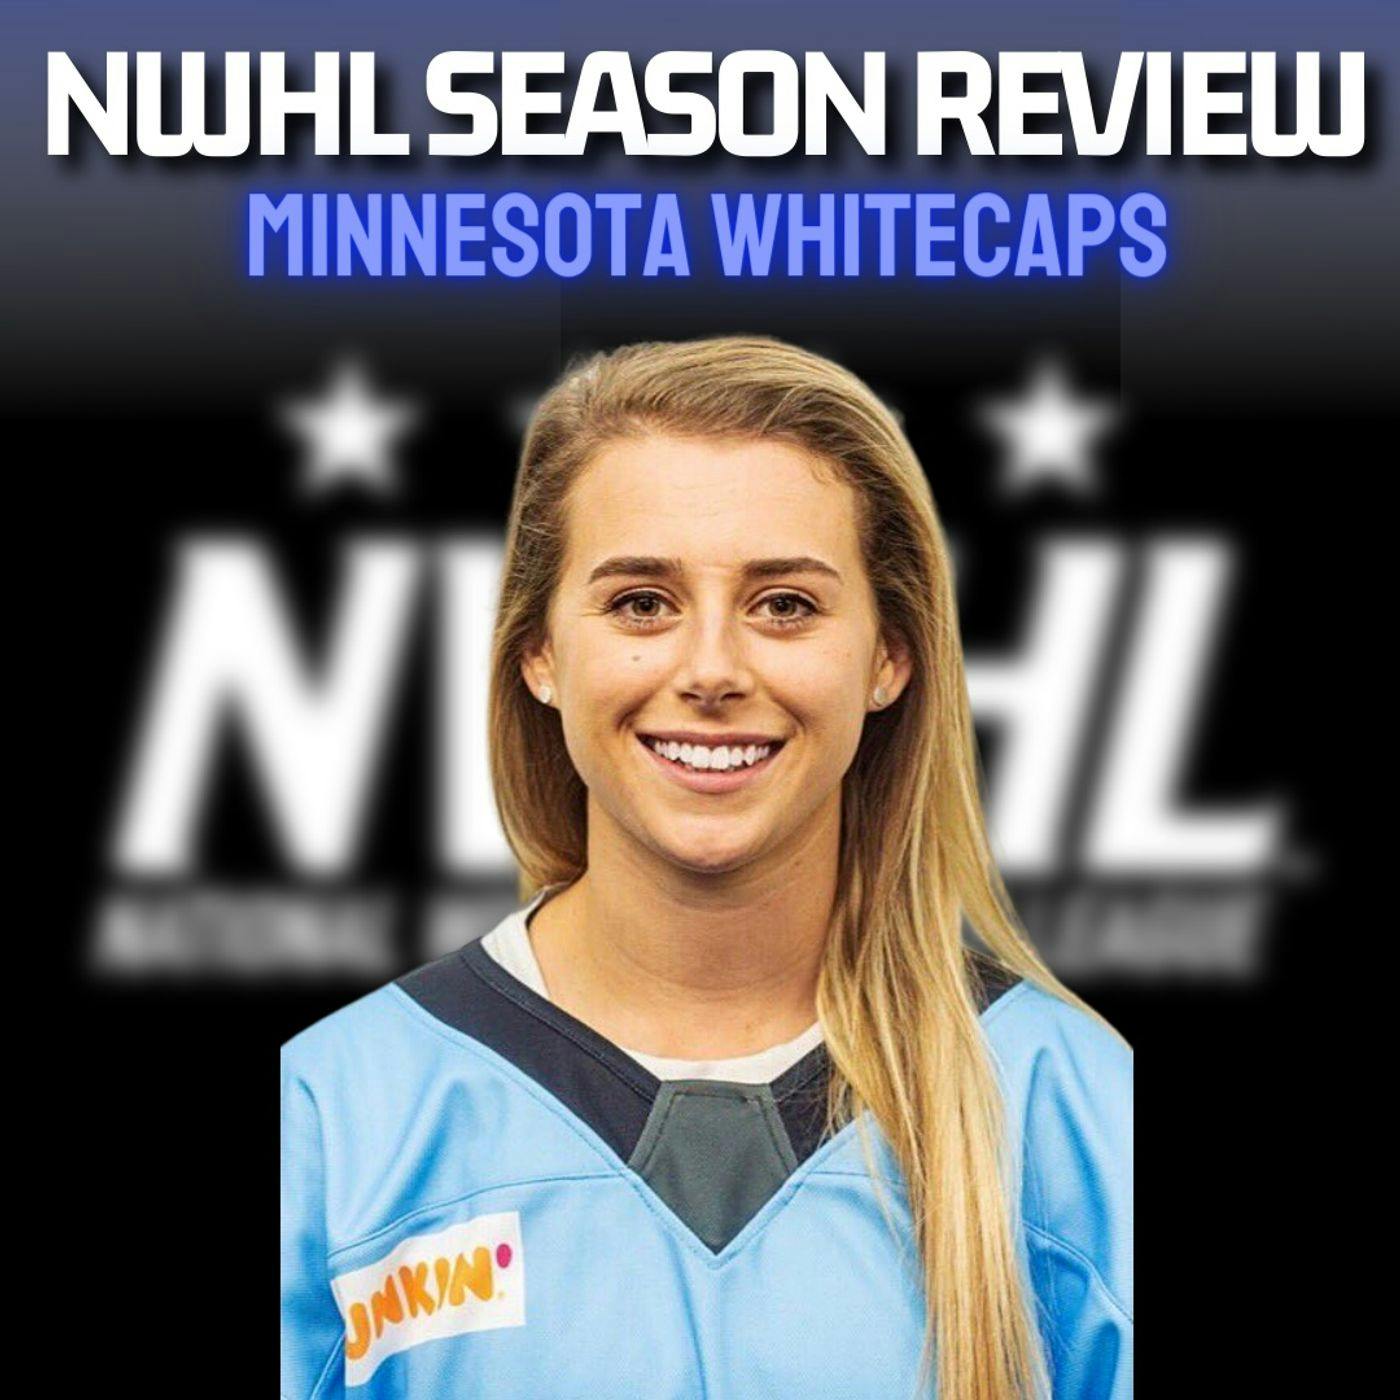 NWHL Season Review - MINNESOTA WHITECAPS! With Sara Bustad